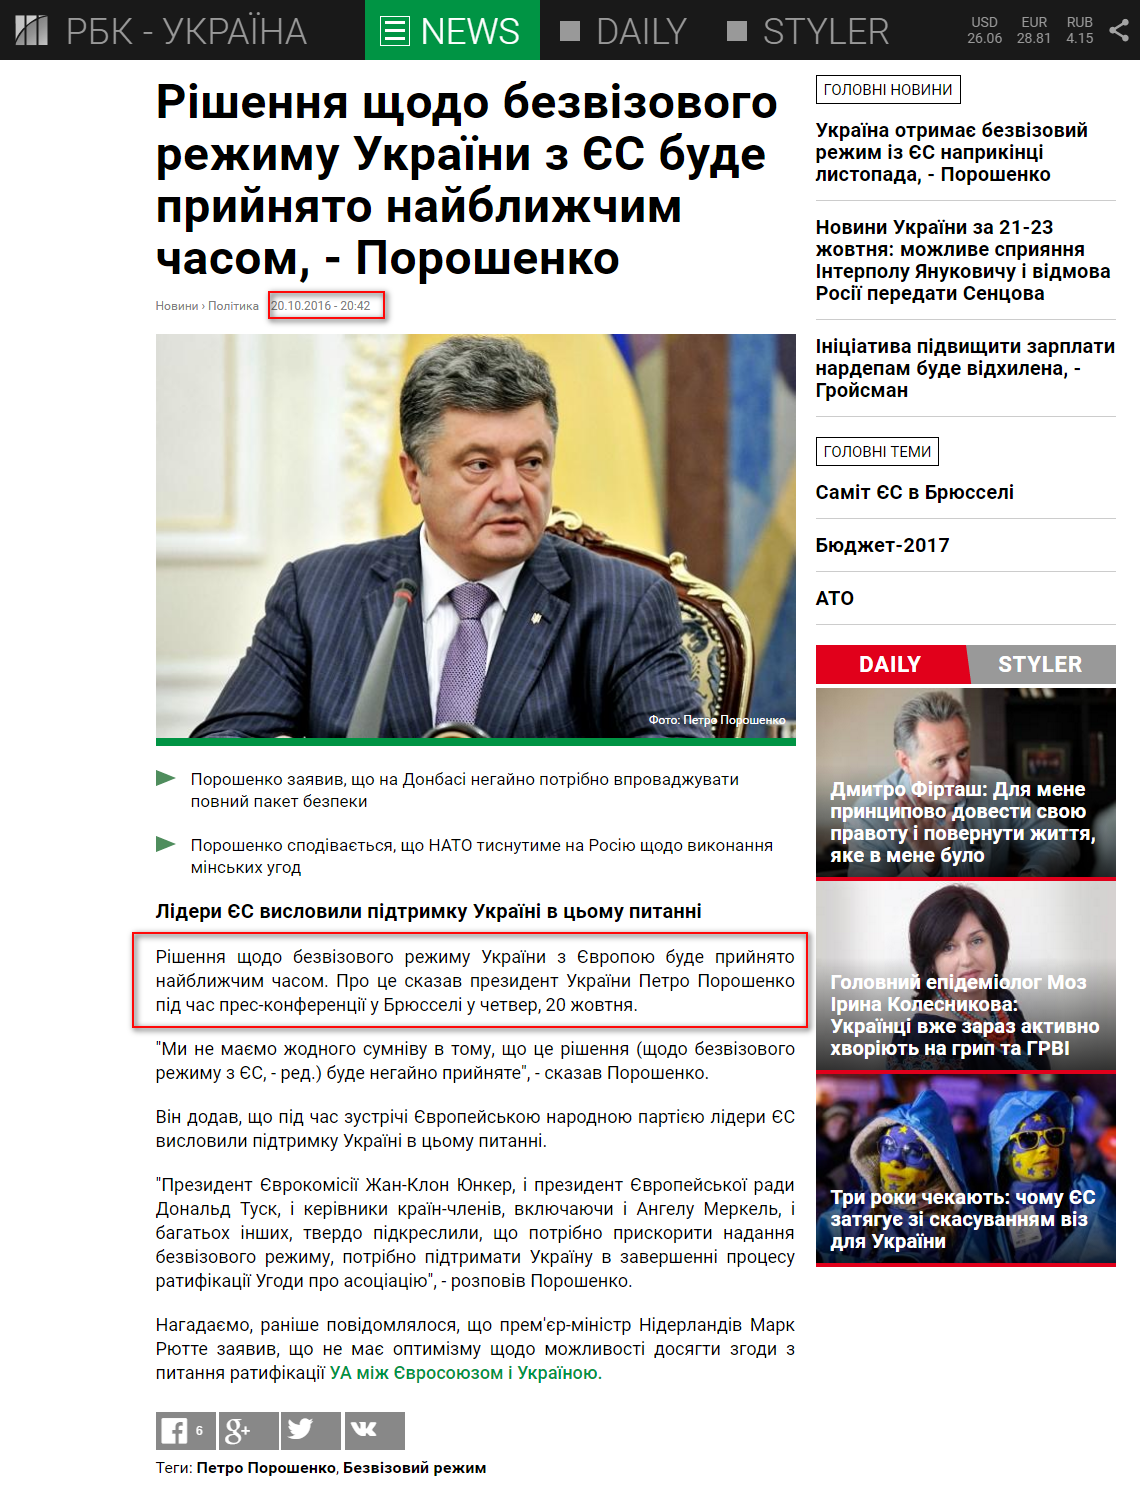 https://www.rbc.ua/ukr/news/reshenie-bezvizovomu-rezhimu-ukrainy-es-budet-1476985345.html